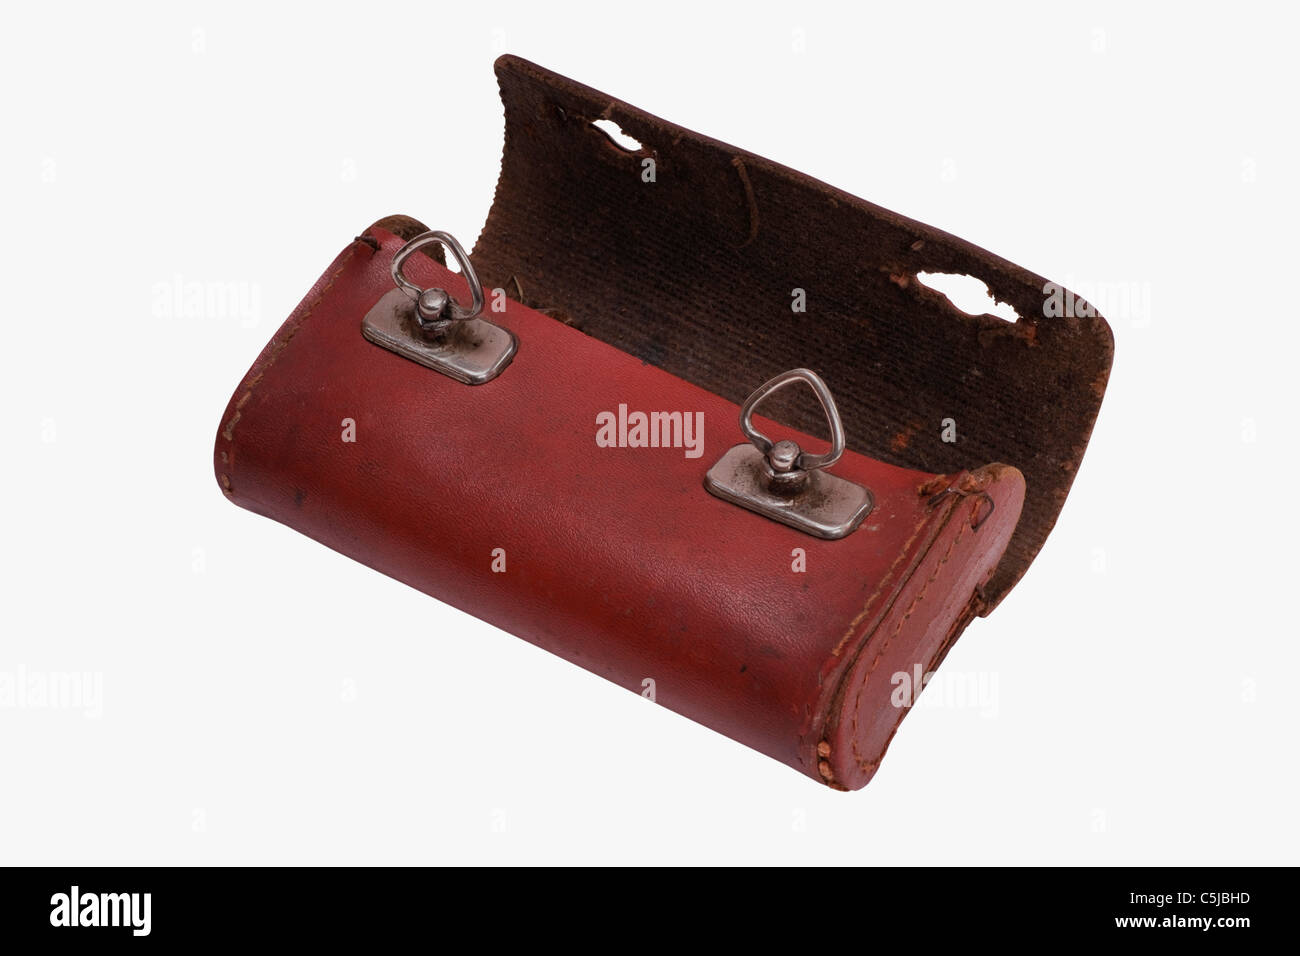 Detailansicht einer alten Satteltasche eines Fahrrades | Detail photo of a old saddlebag of a bicycle Stock Photo